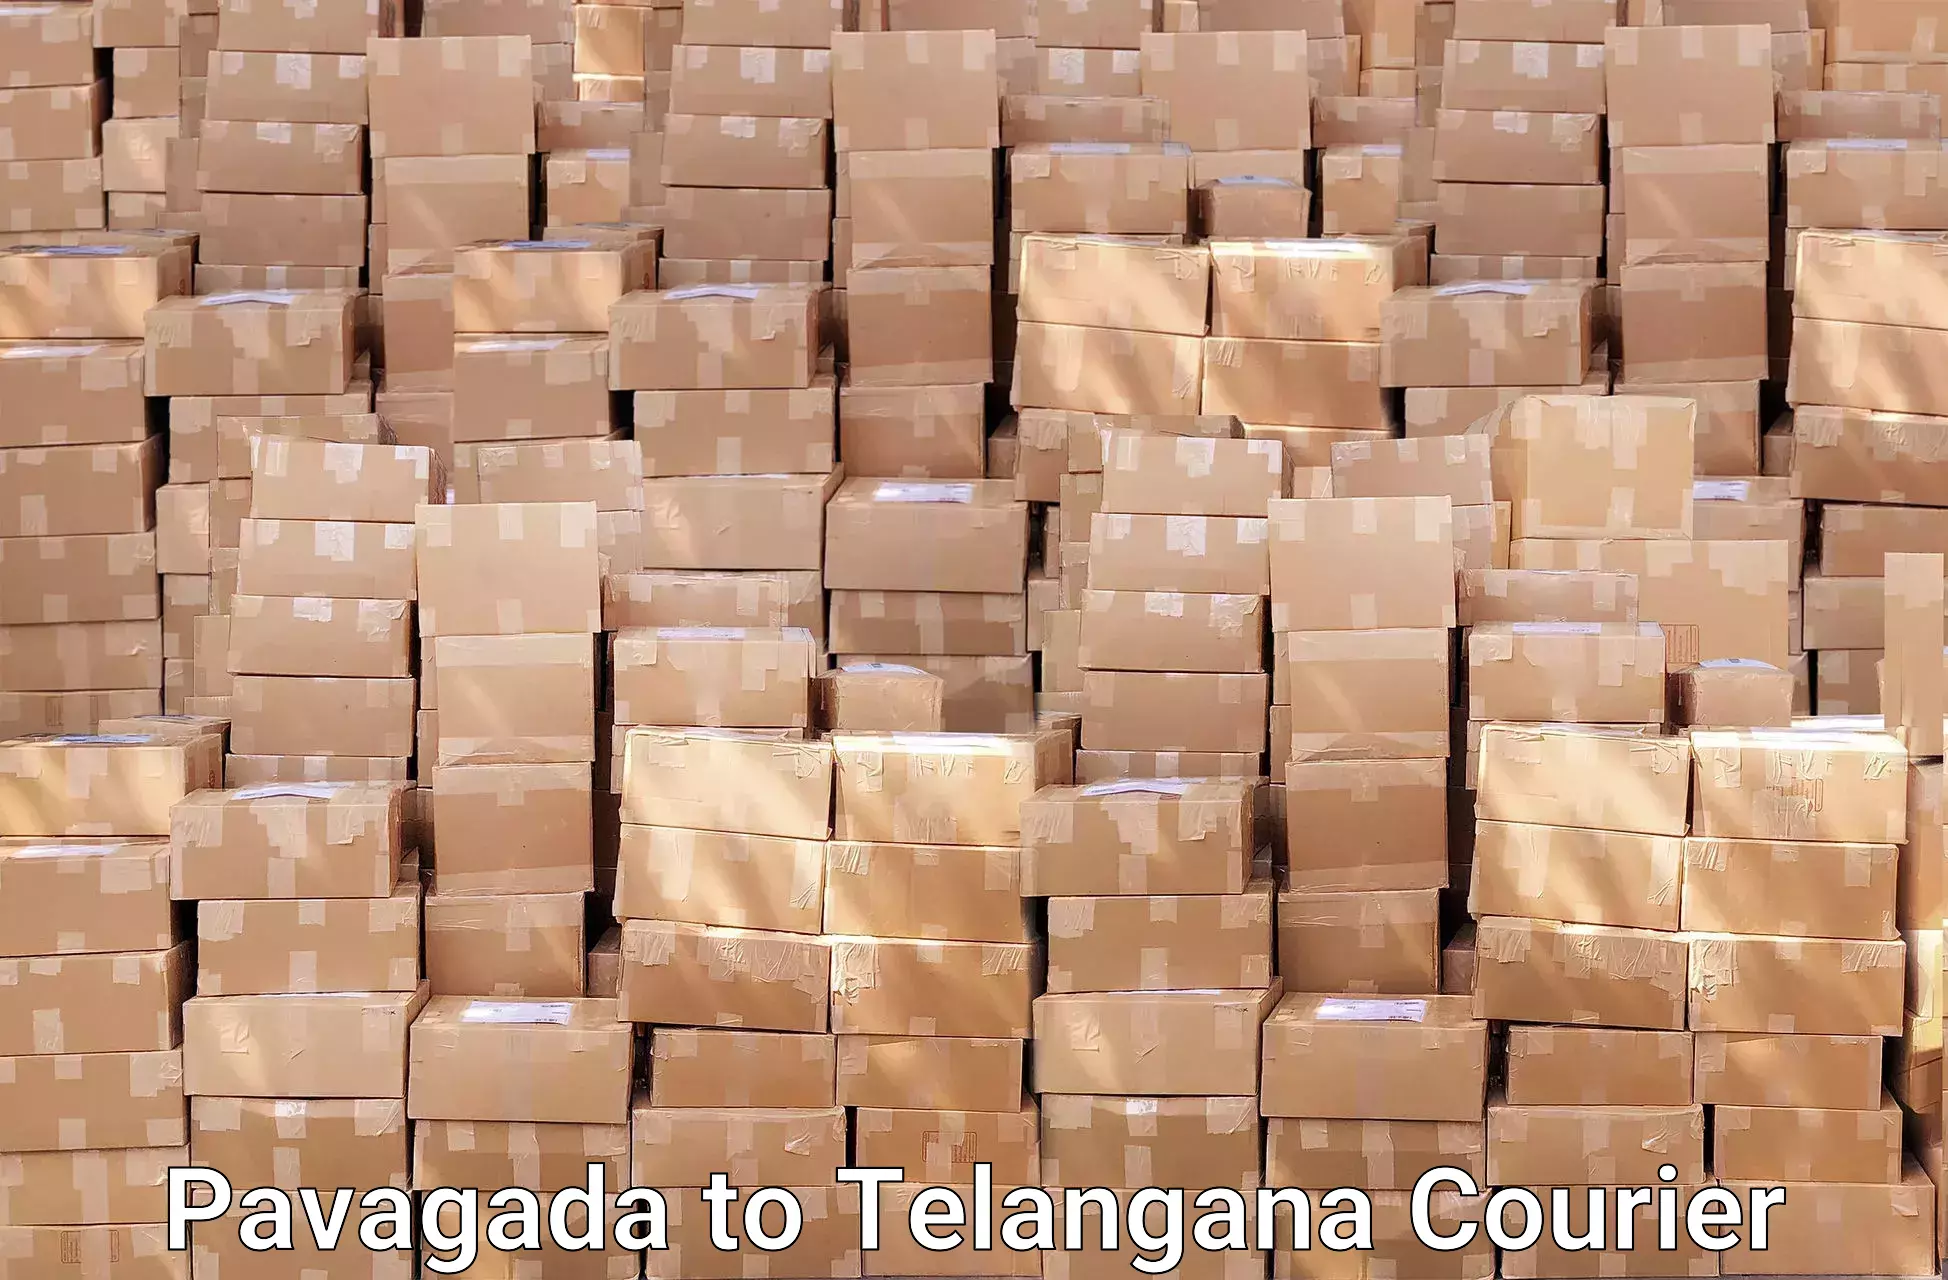 Furniture transport experts Pavagada to Telangana